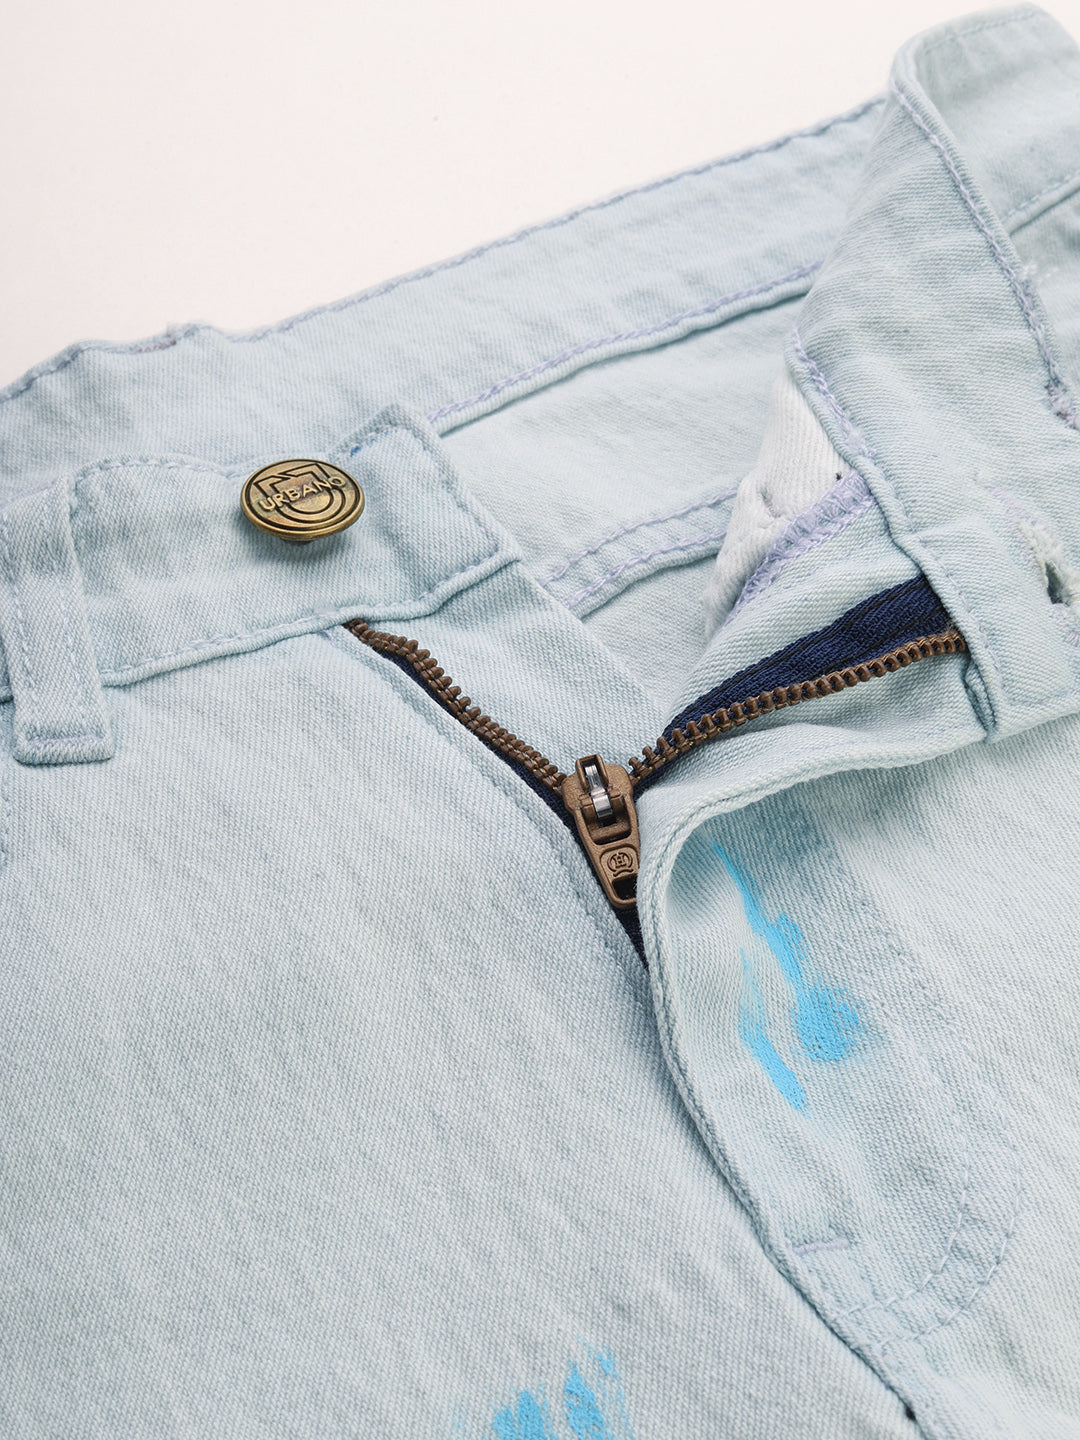 Men's Ice Blue Slim Fit Washed Splatter Printed Jeans Stretchable